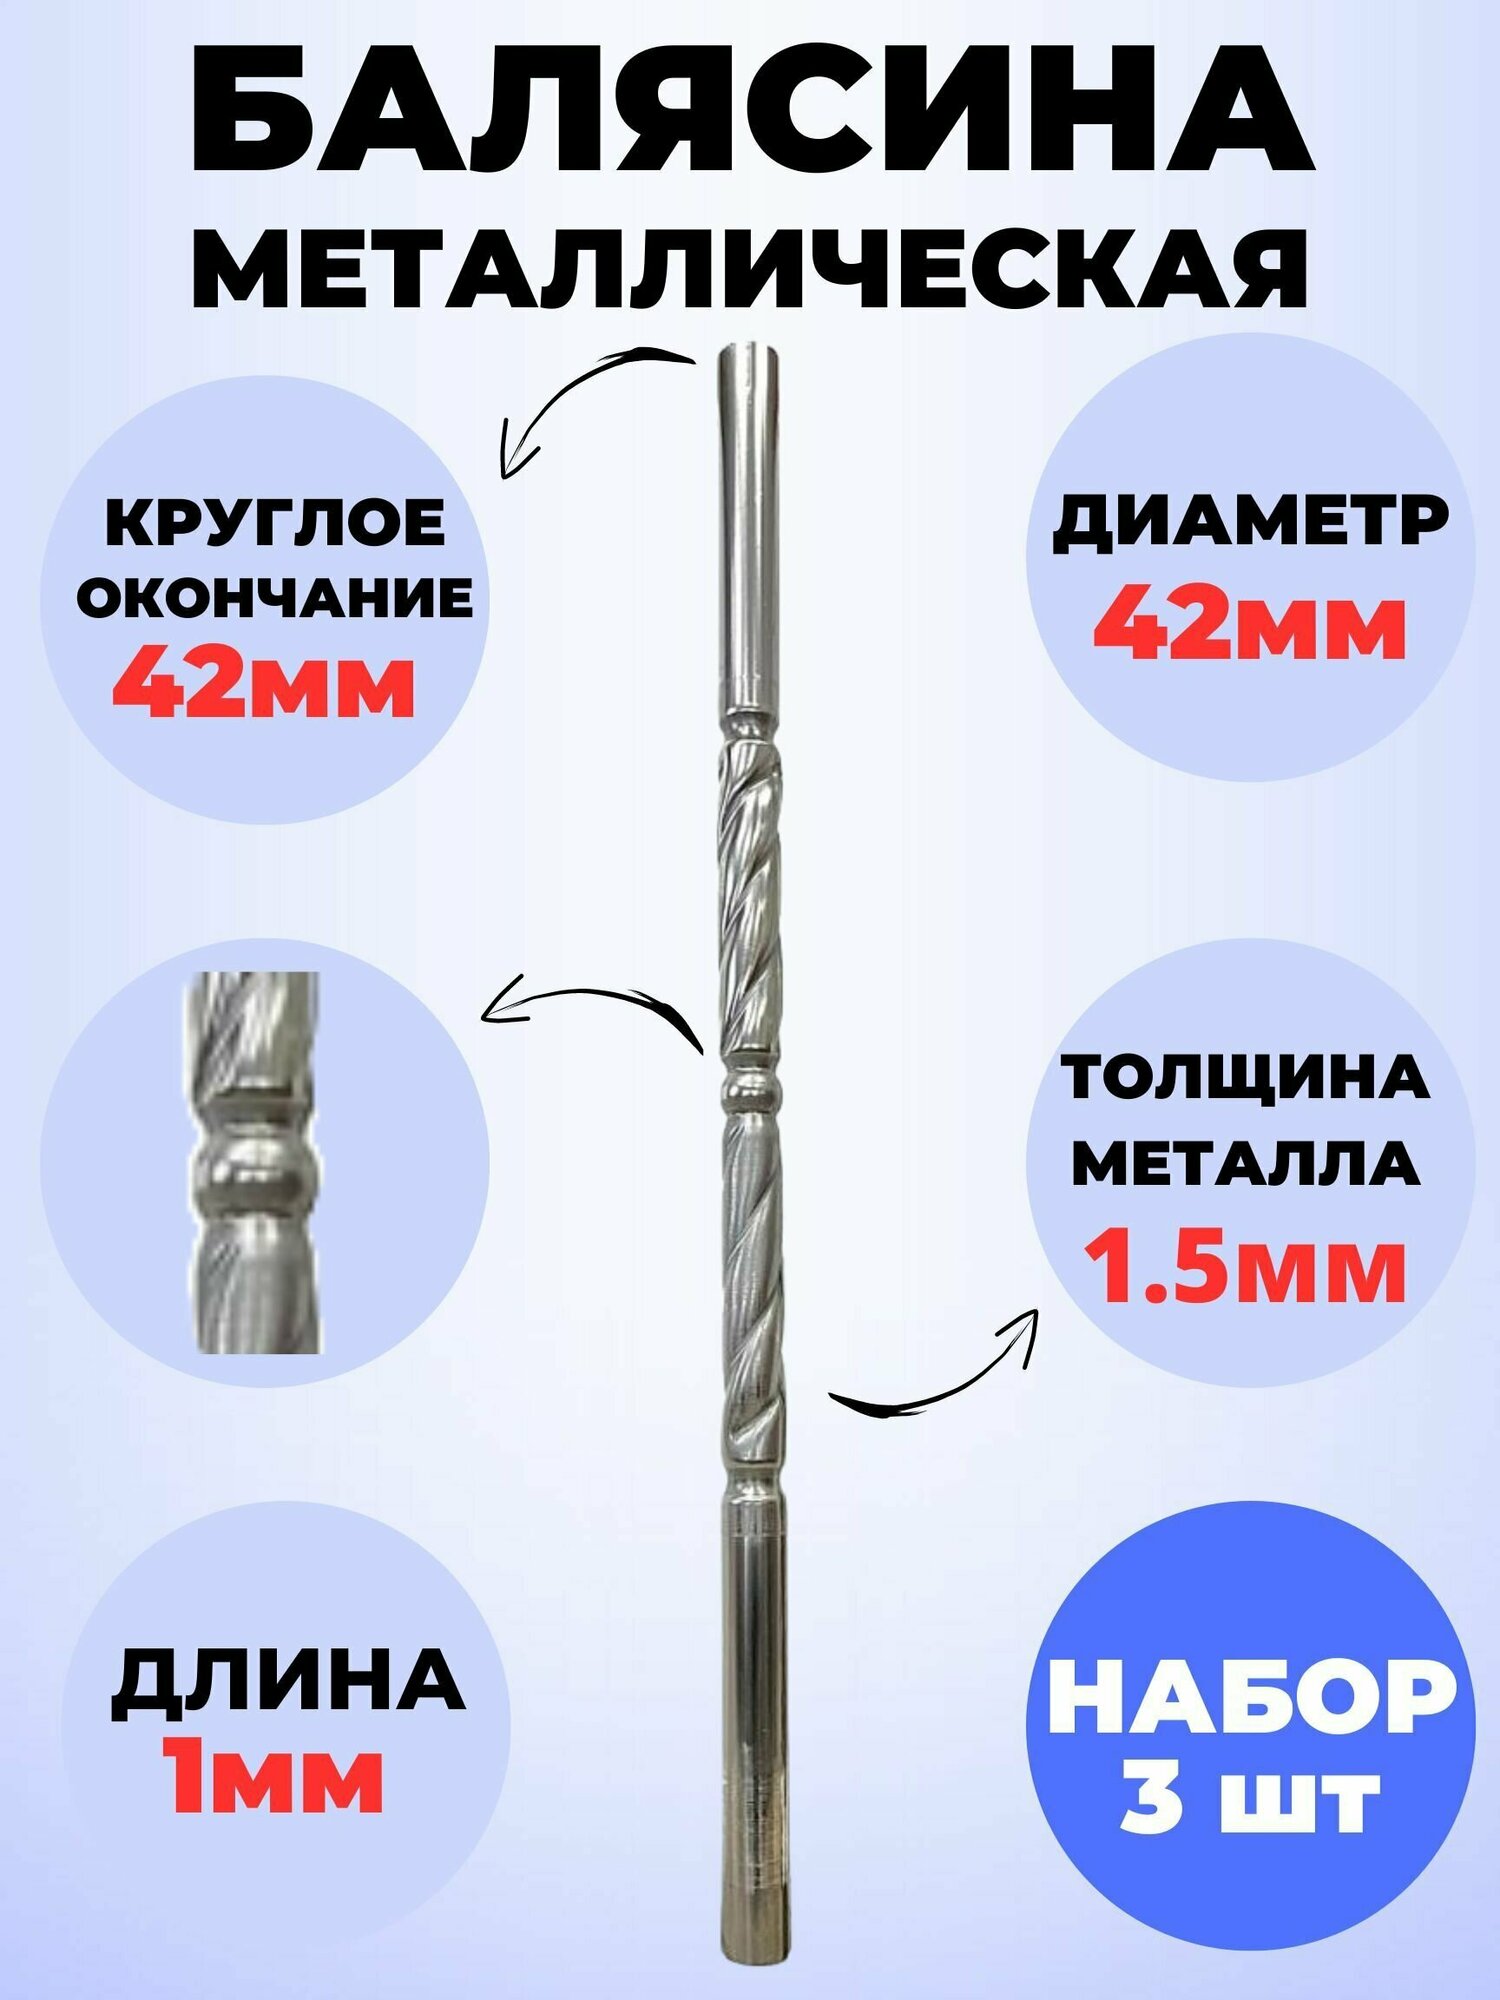 Набор балясин кованых металлических Royal Kovka 3 шт диаметр 42 мм круглые окончания диаметром 42 мм арт. 42.5 В. КР 3